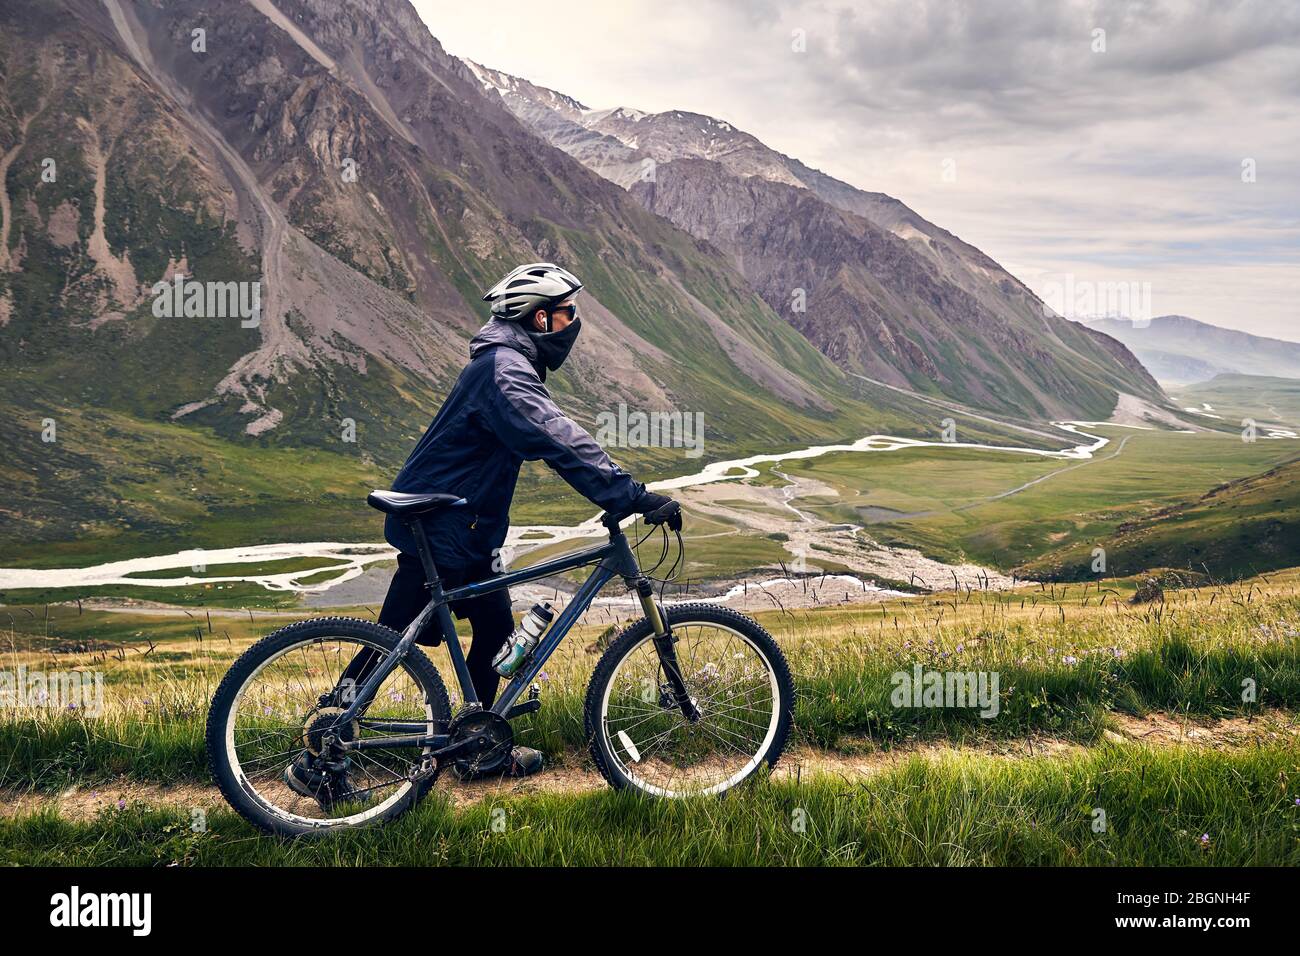 Man on mountain bike dans le casque, la vallée avec rivière à ciel nuageux fond. Banque D'Images